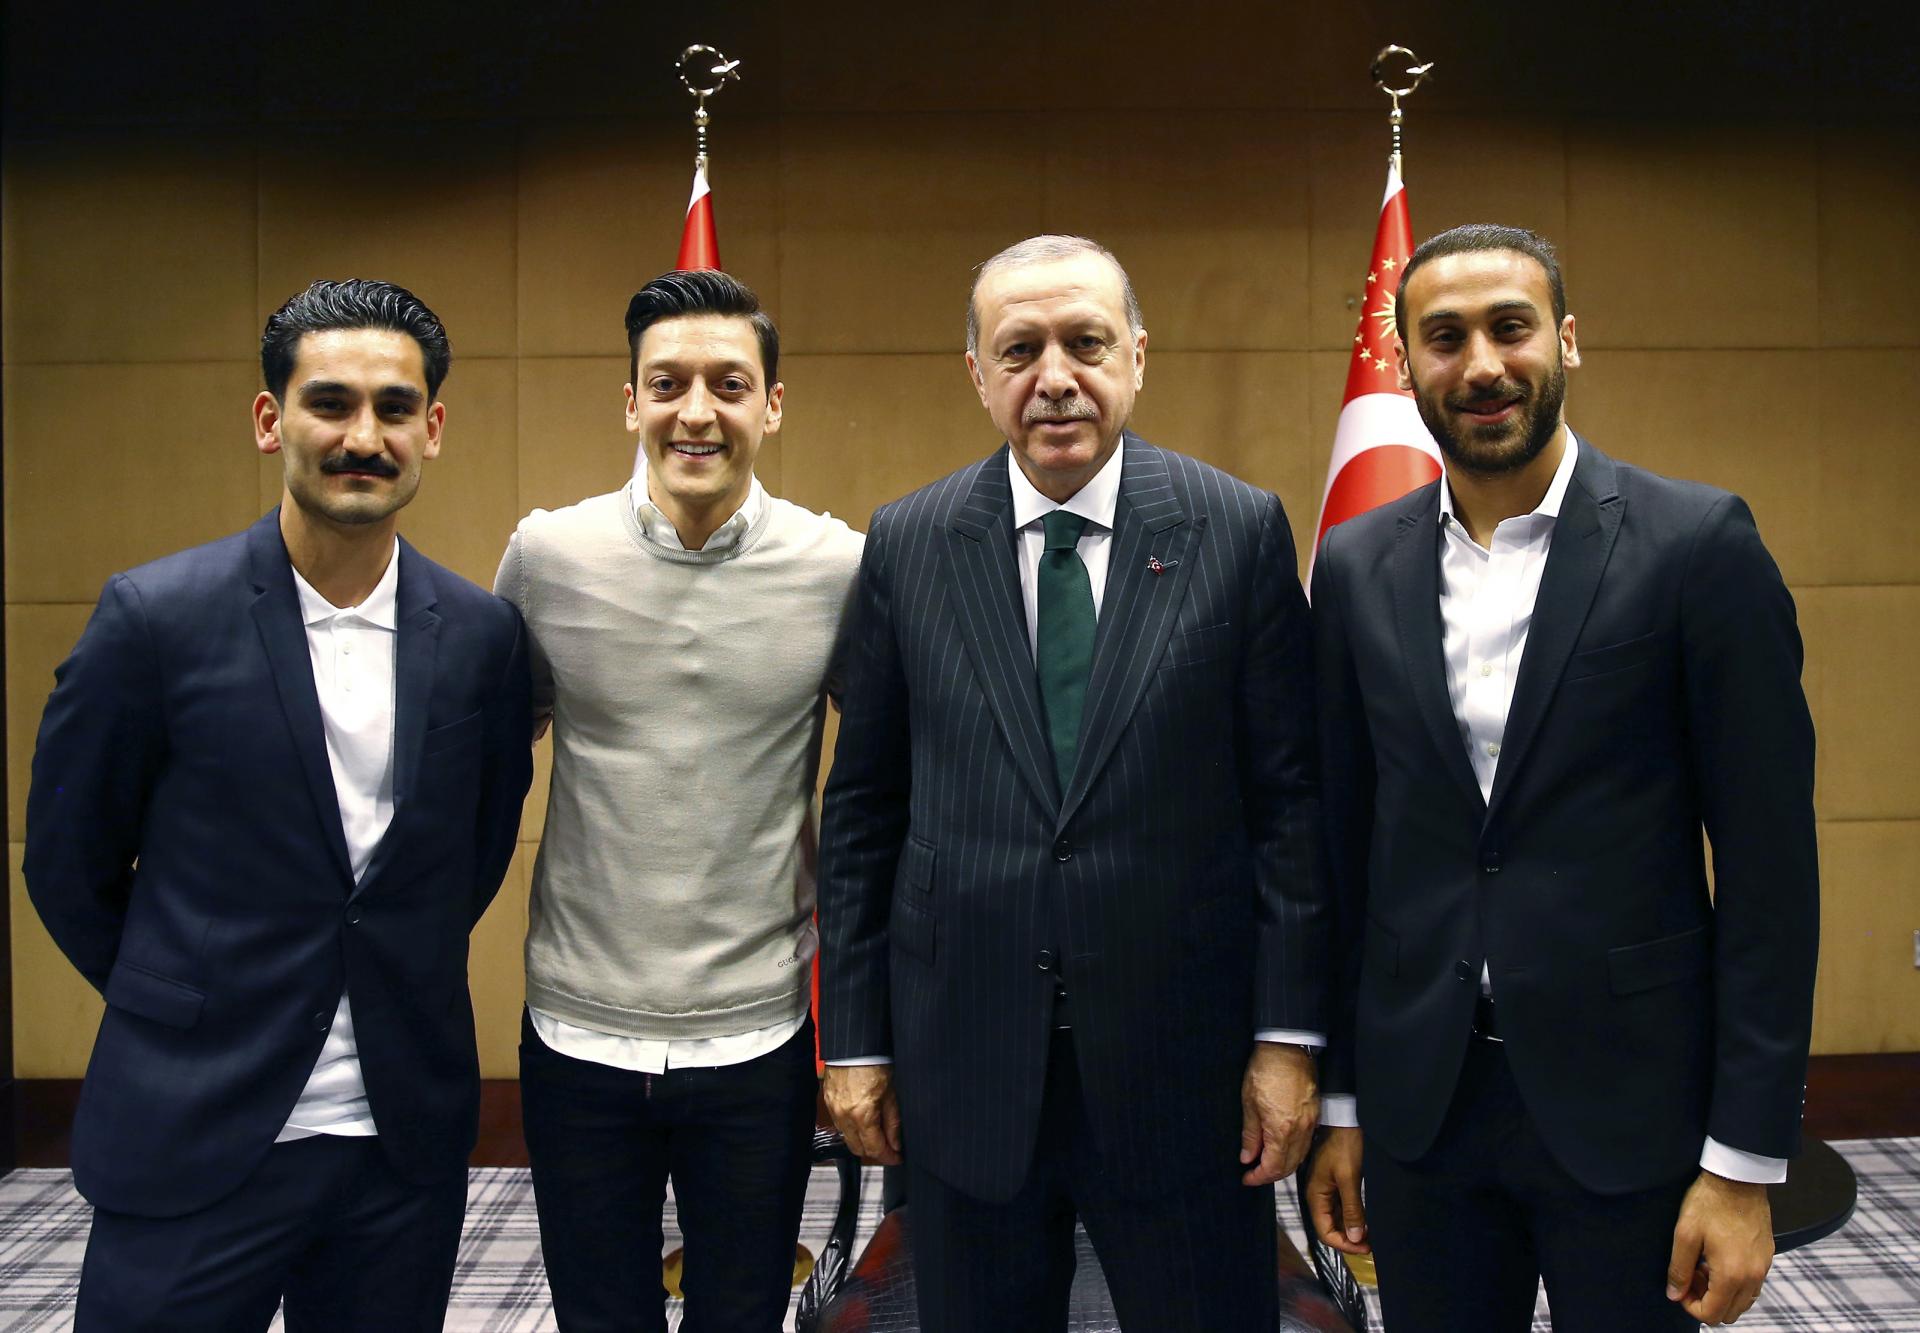 Turecký prezident Recep Tayyip Erdogan a hráči Ilkay Gundogan, Mesut Ozil a Cenk Tosun.